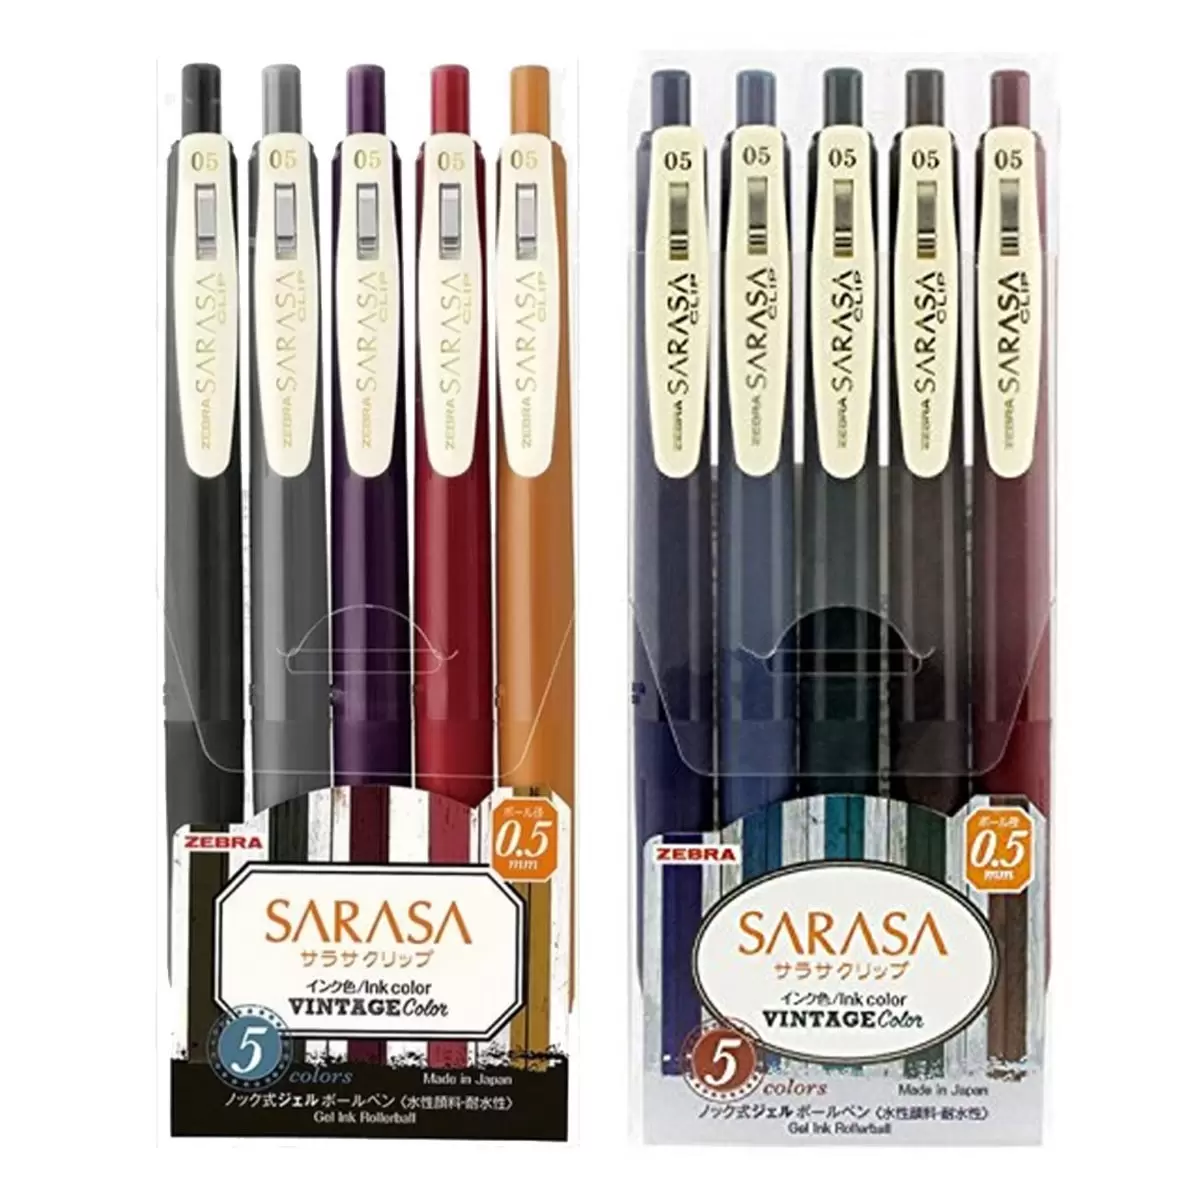 Zebra Sarasa Clip 典雅風鋼珠筆0.5公釐 5色組 X 4入 第一代+第二代